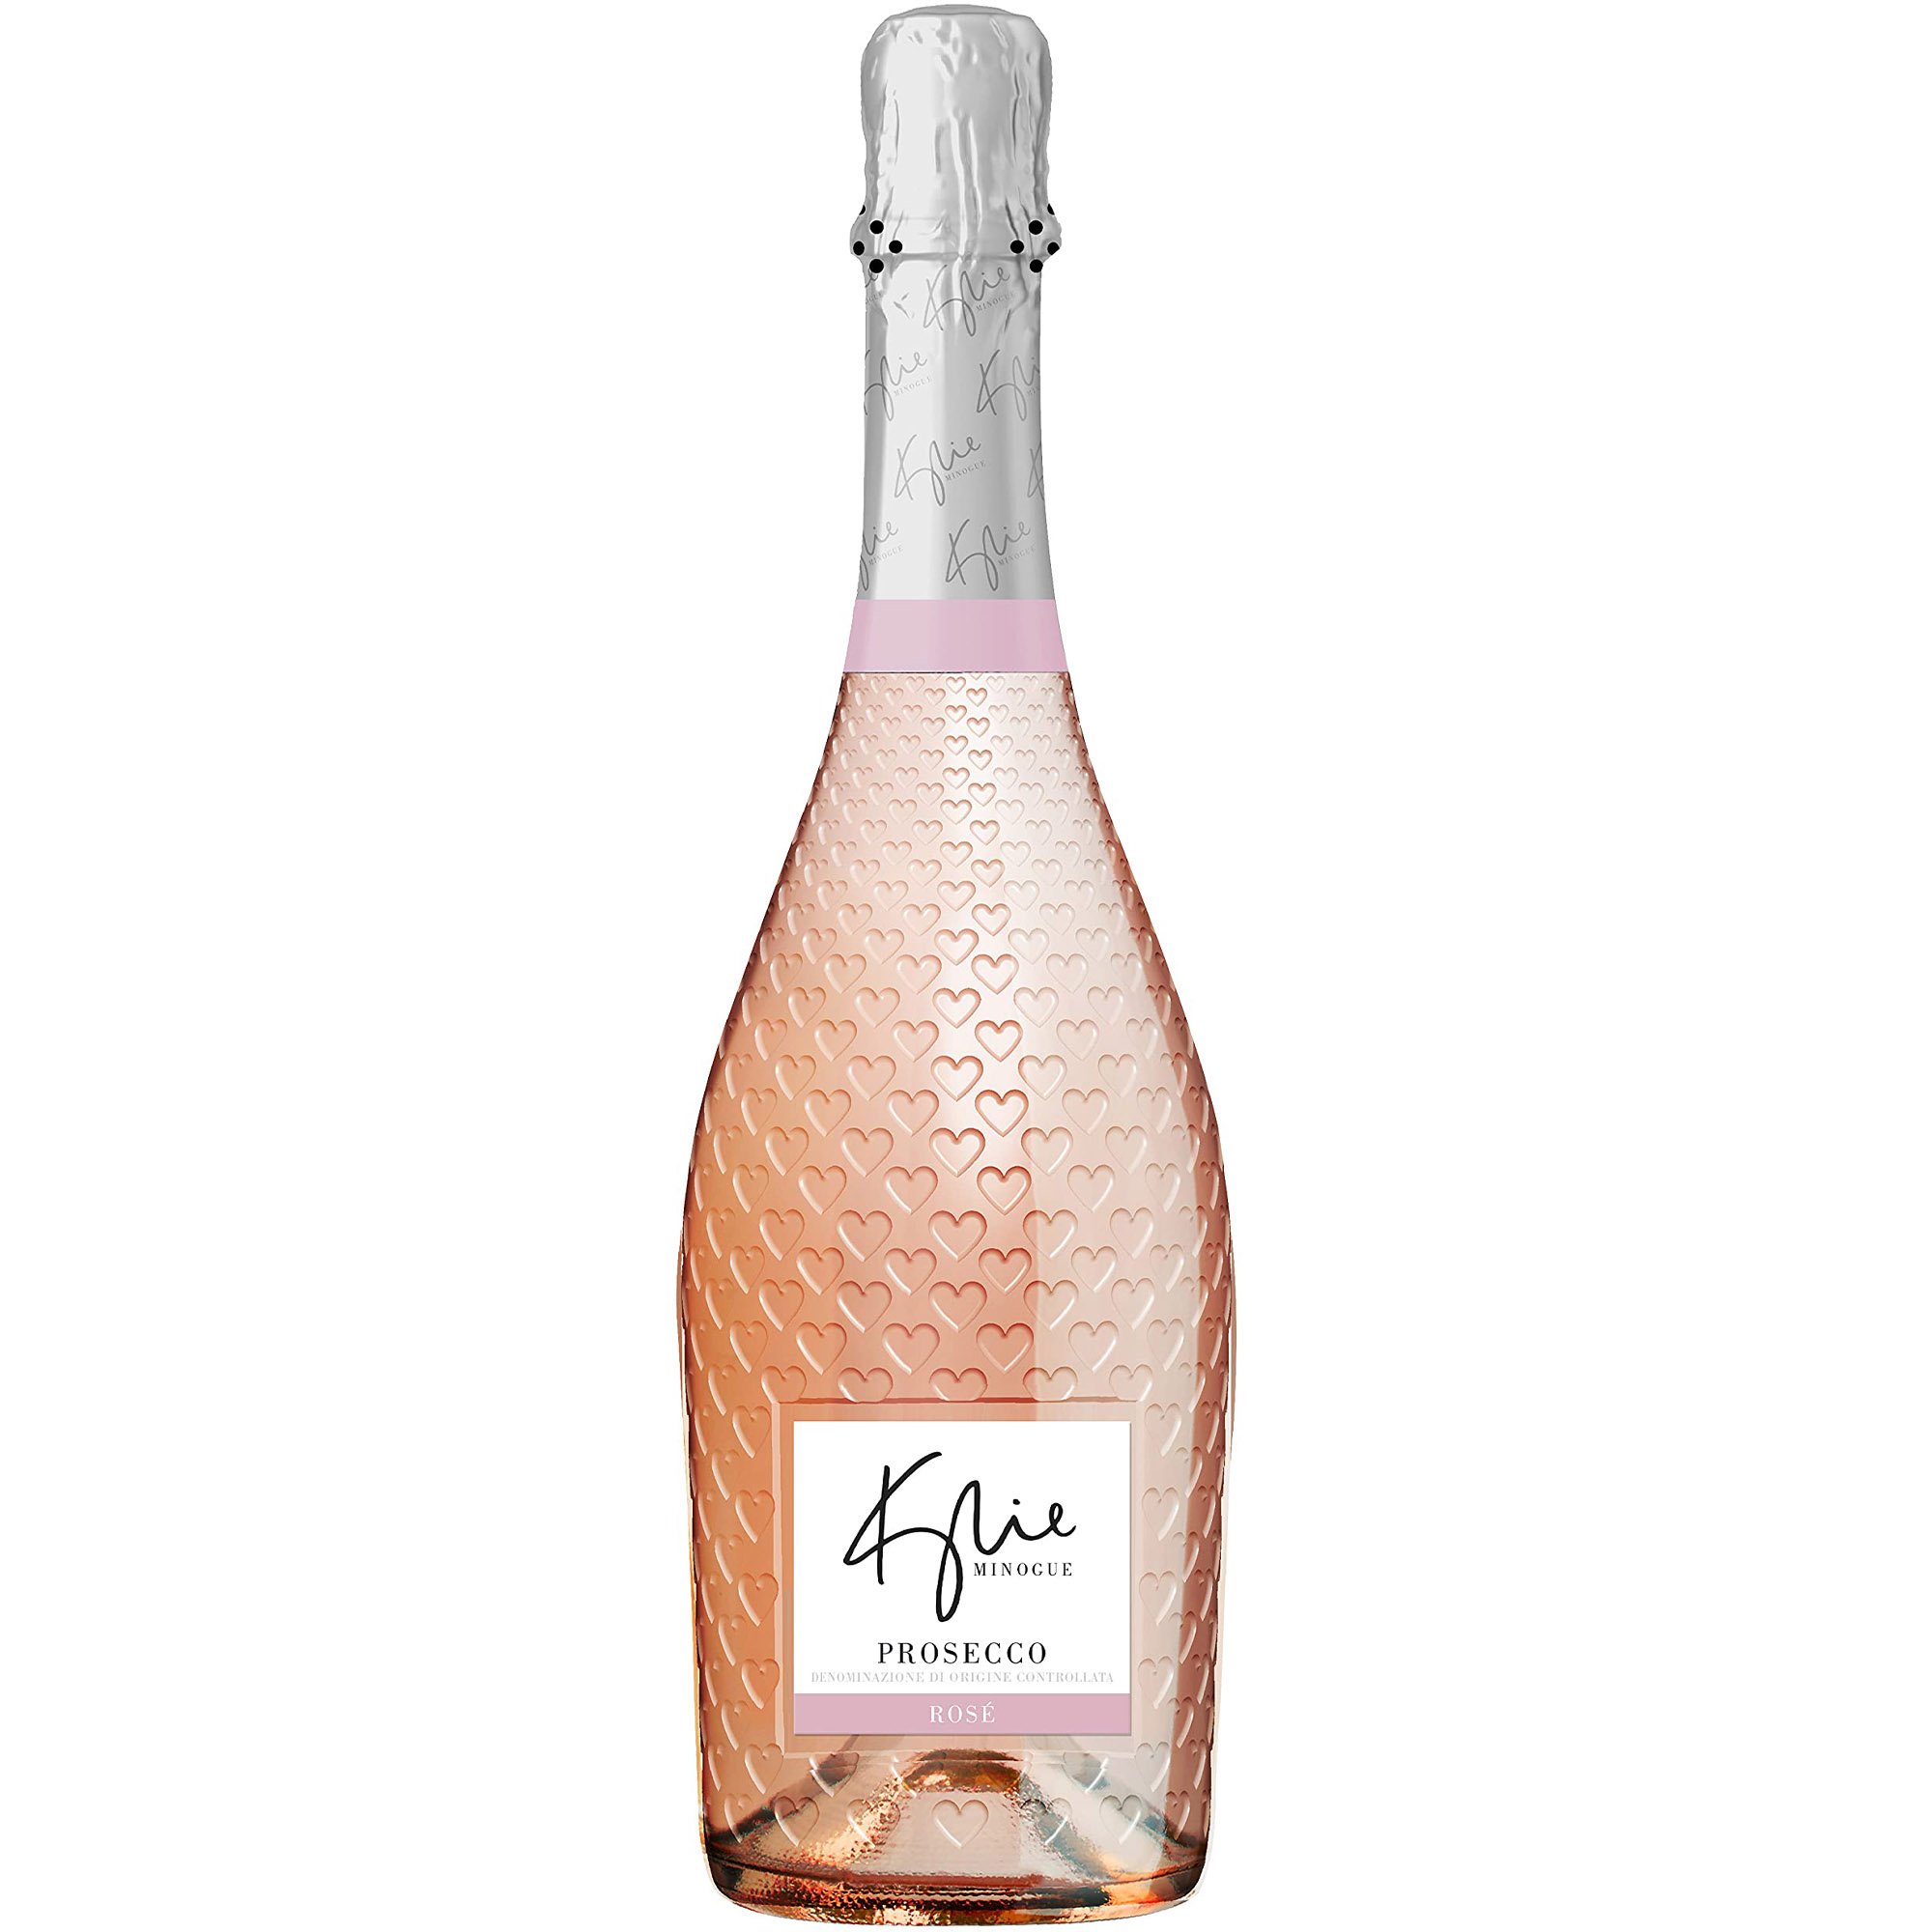 Игристое вино Kylie Minogue Prosecco Rose розовое брют 0.75 л - фото 1